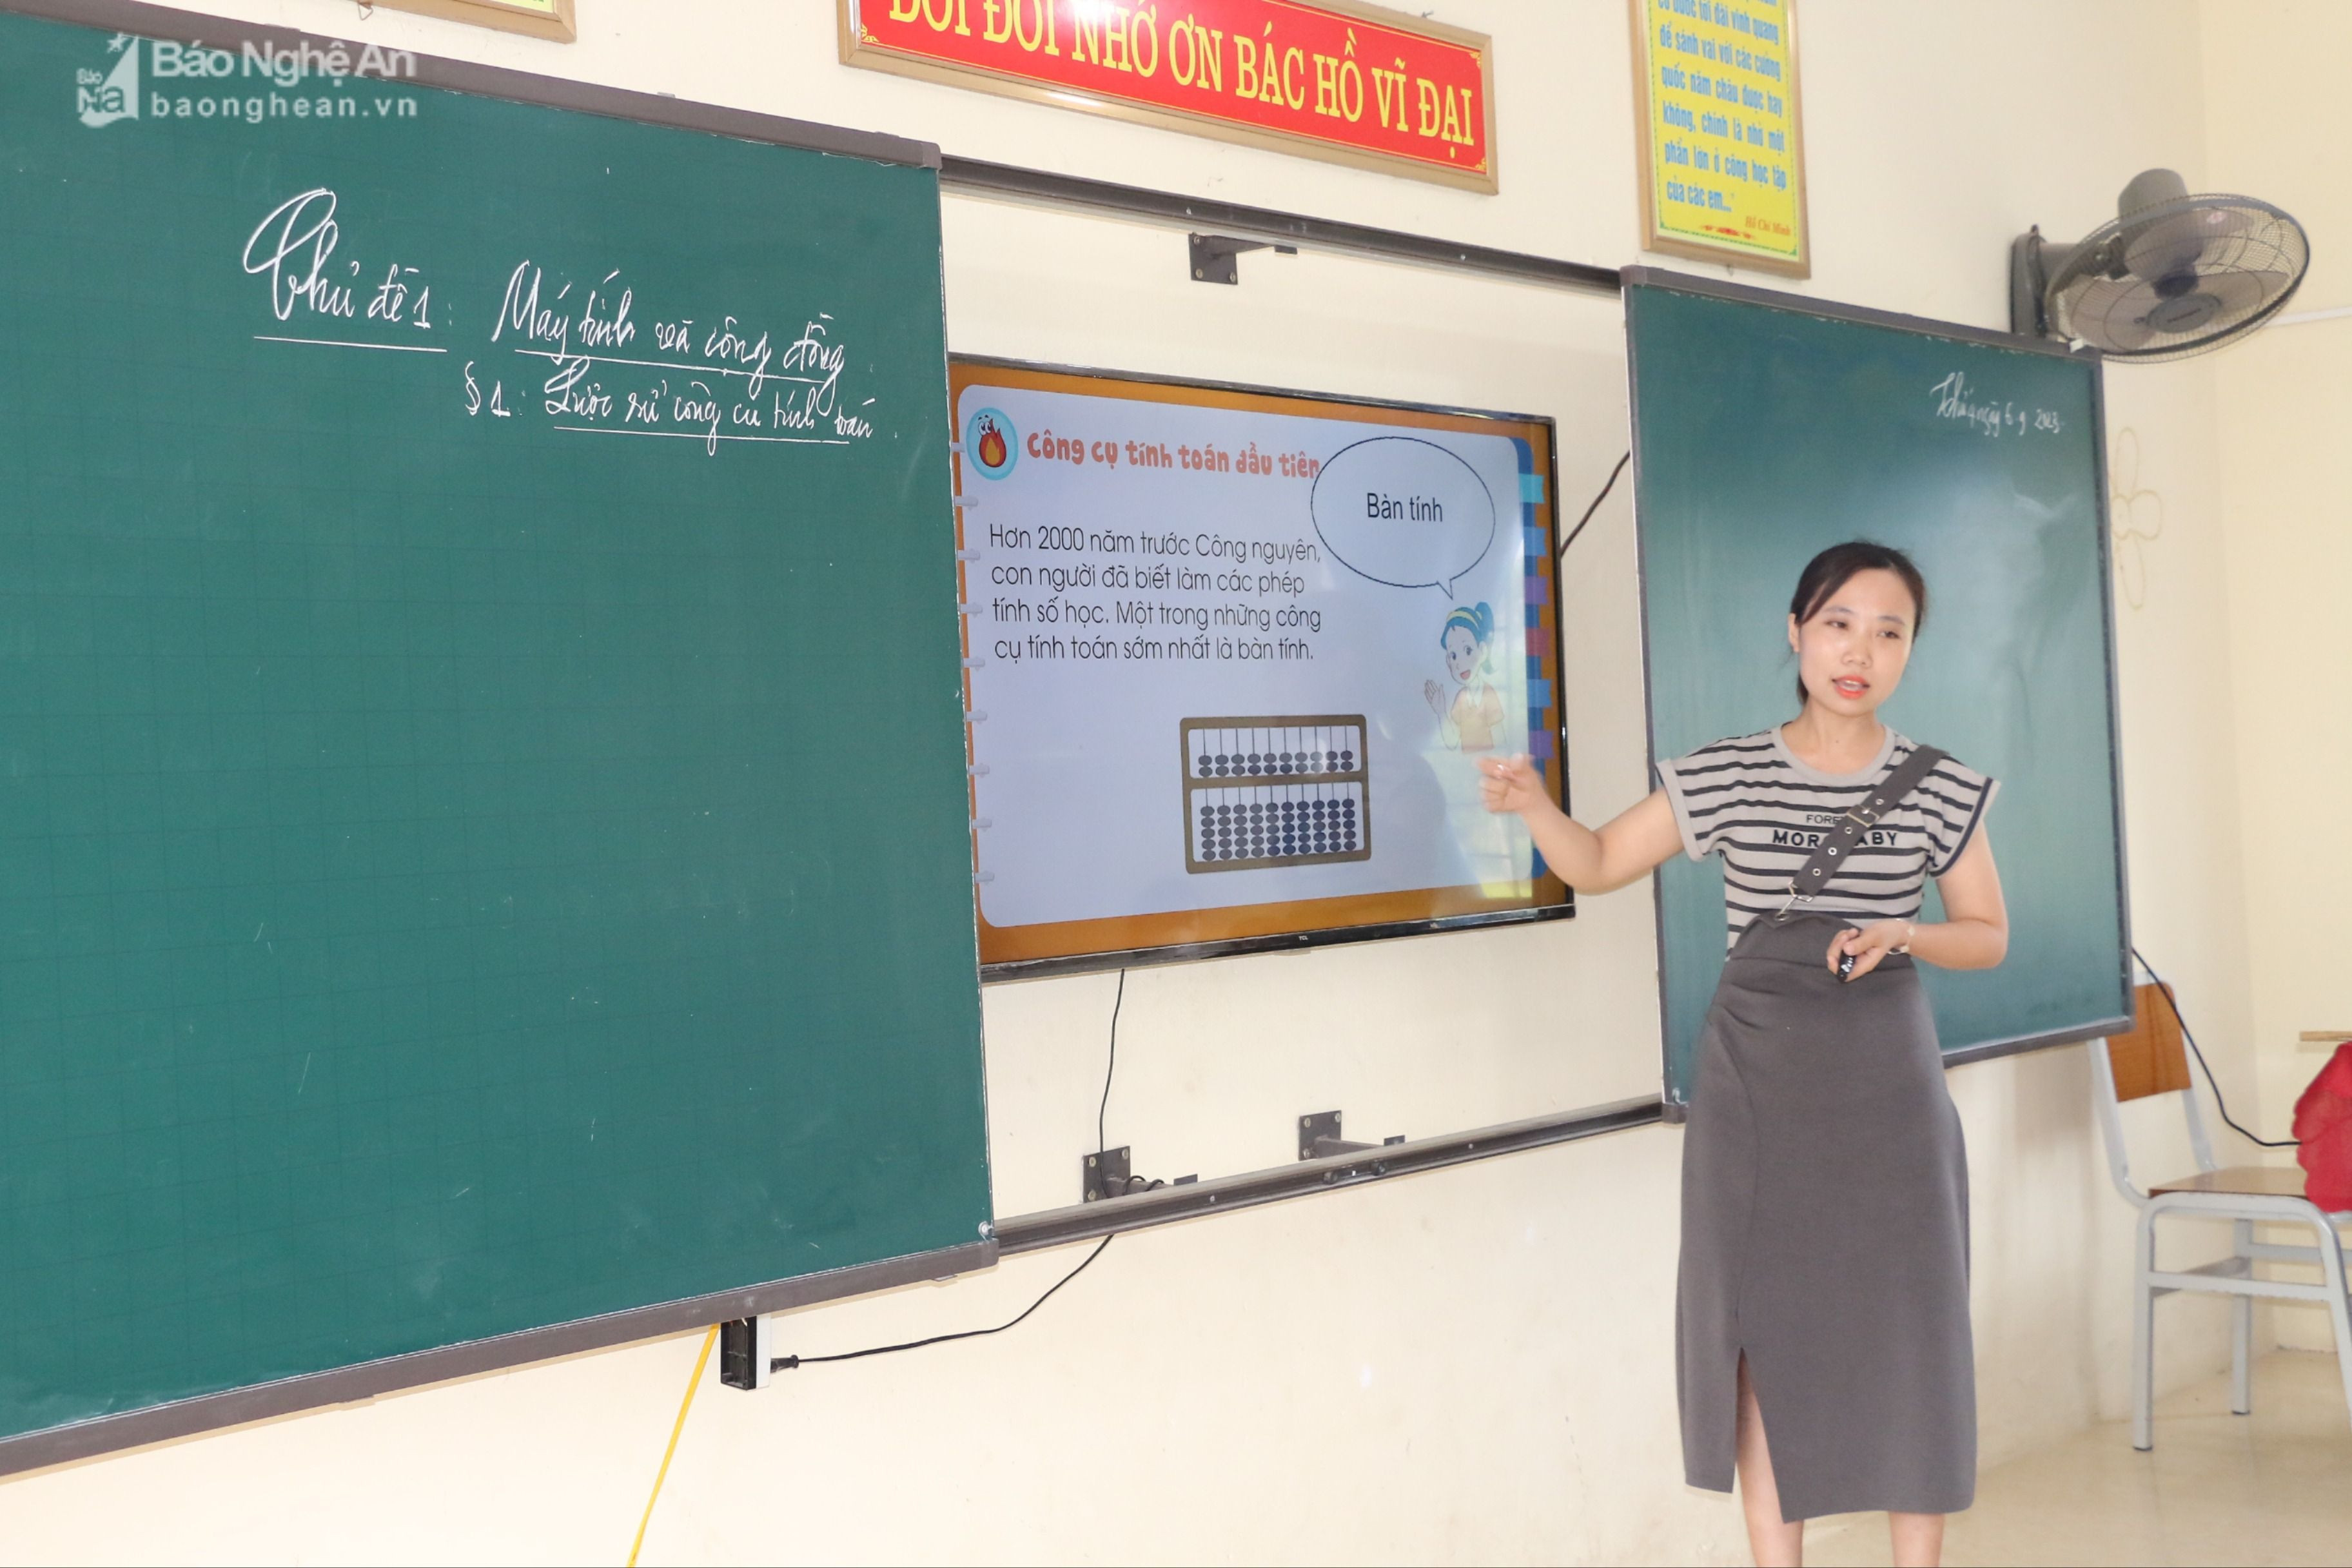 Dù chuyên môn chính là Sinh học nhưng cô giáo Nguyễn Thị Minh - THCS Nghi Phương phải đảm nhiệm thêm nhiều môn học khác.JPG